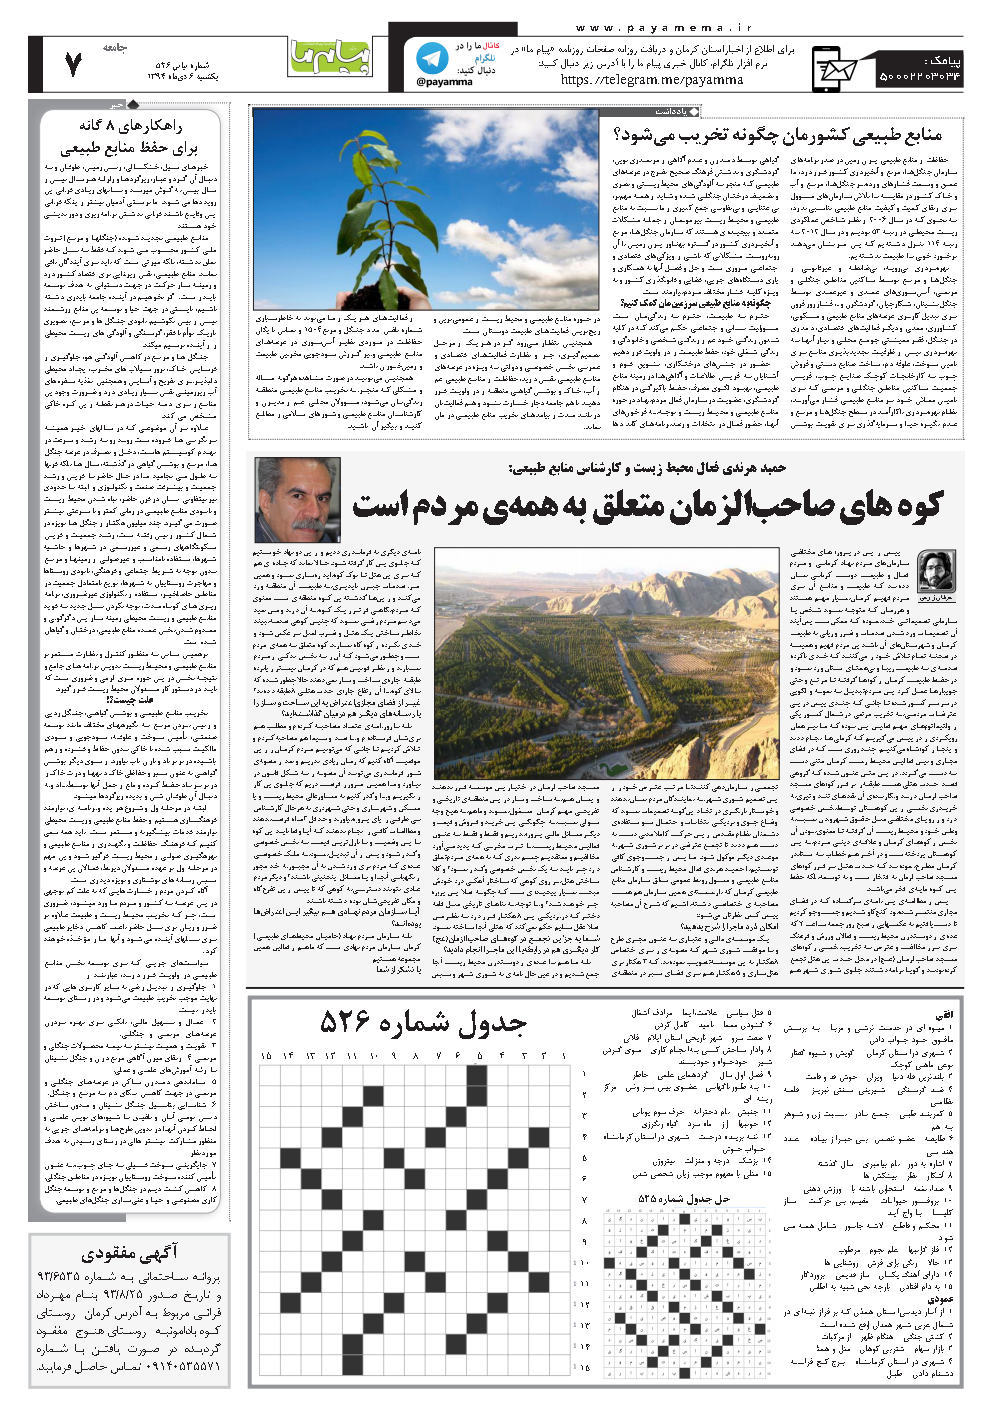 حمید هرندی فعال محیط زیست و کارشناس منابع طبیعی: کوه های صاحب‌الزمان متعلق به همه‌ی مردم است